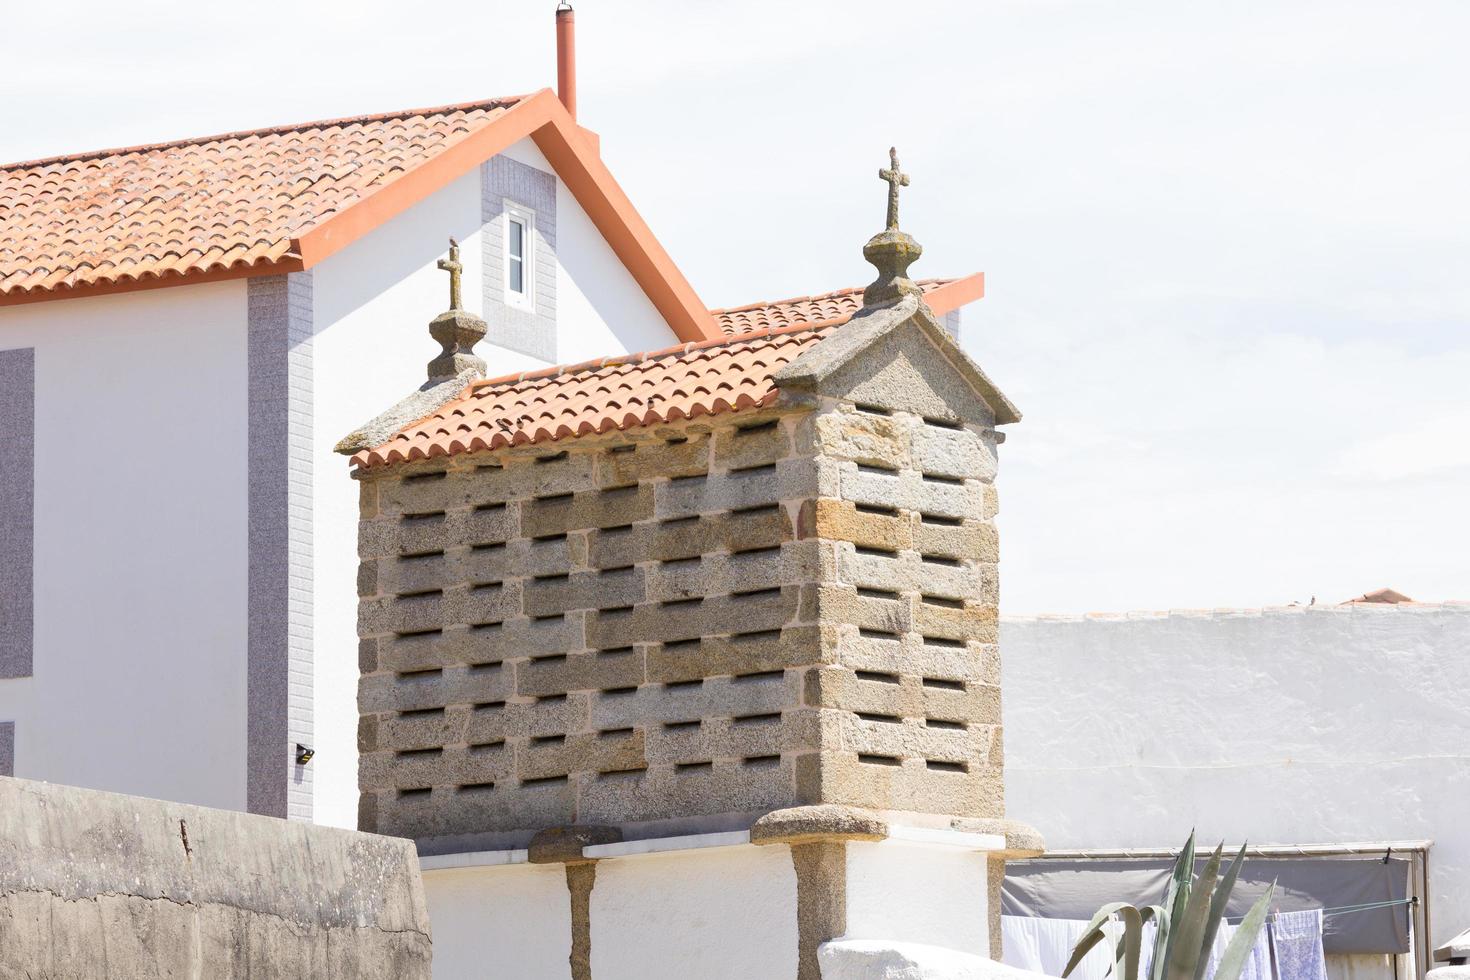 orreo, une architecture typiquement galicienne pour le stockage du grain. photo